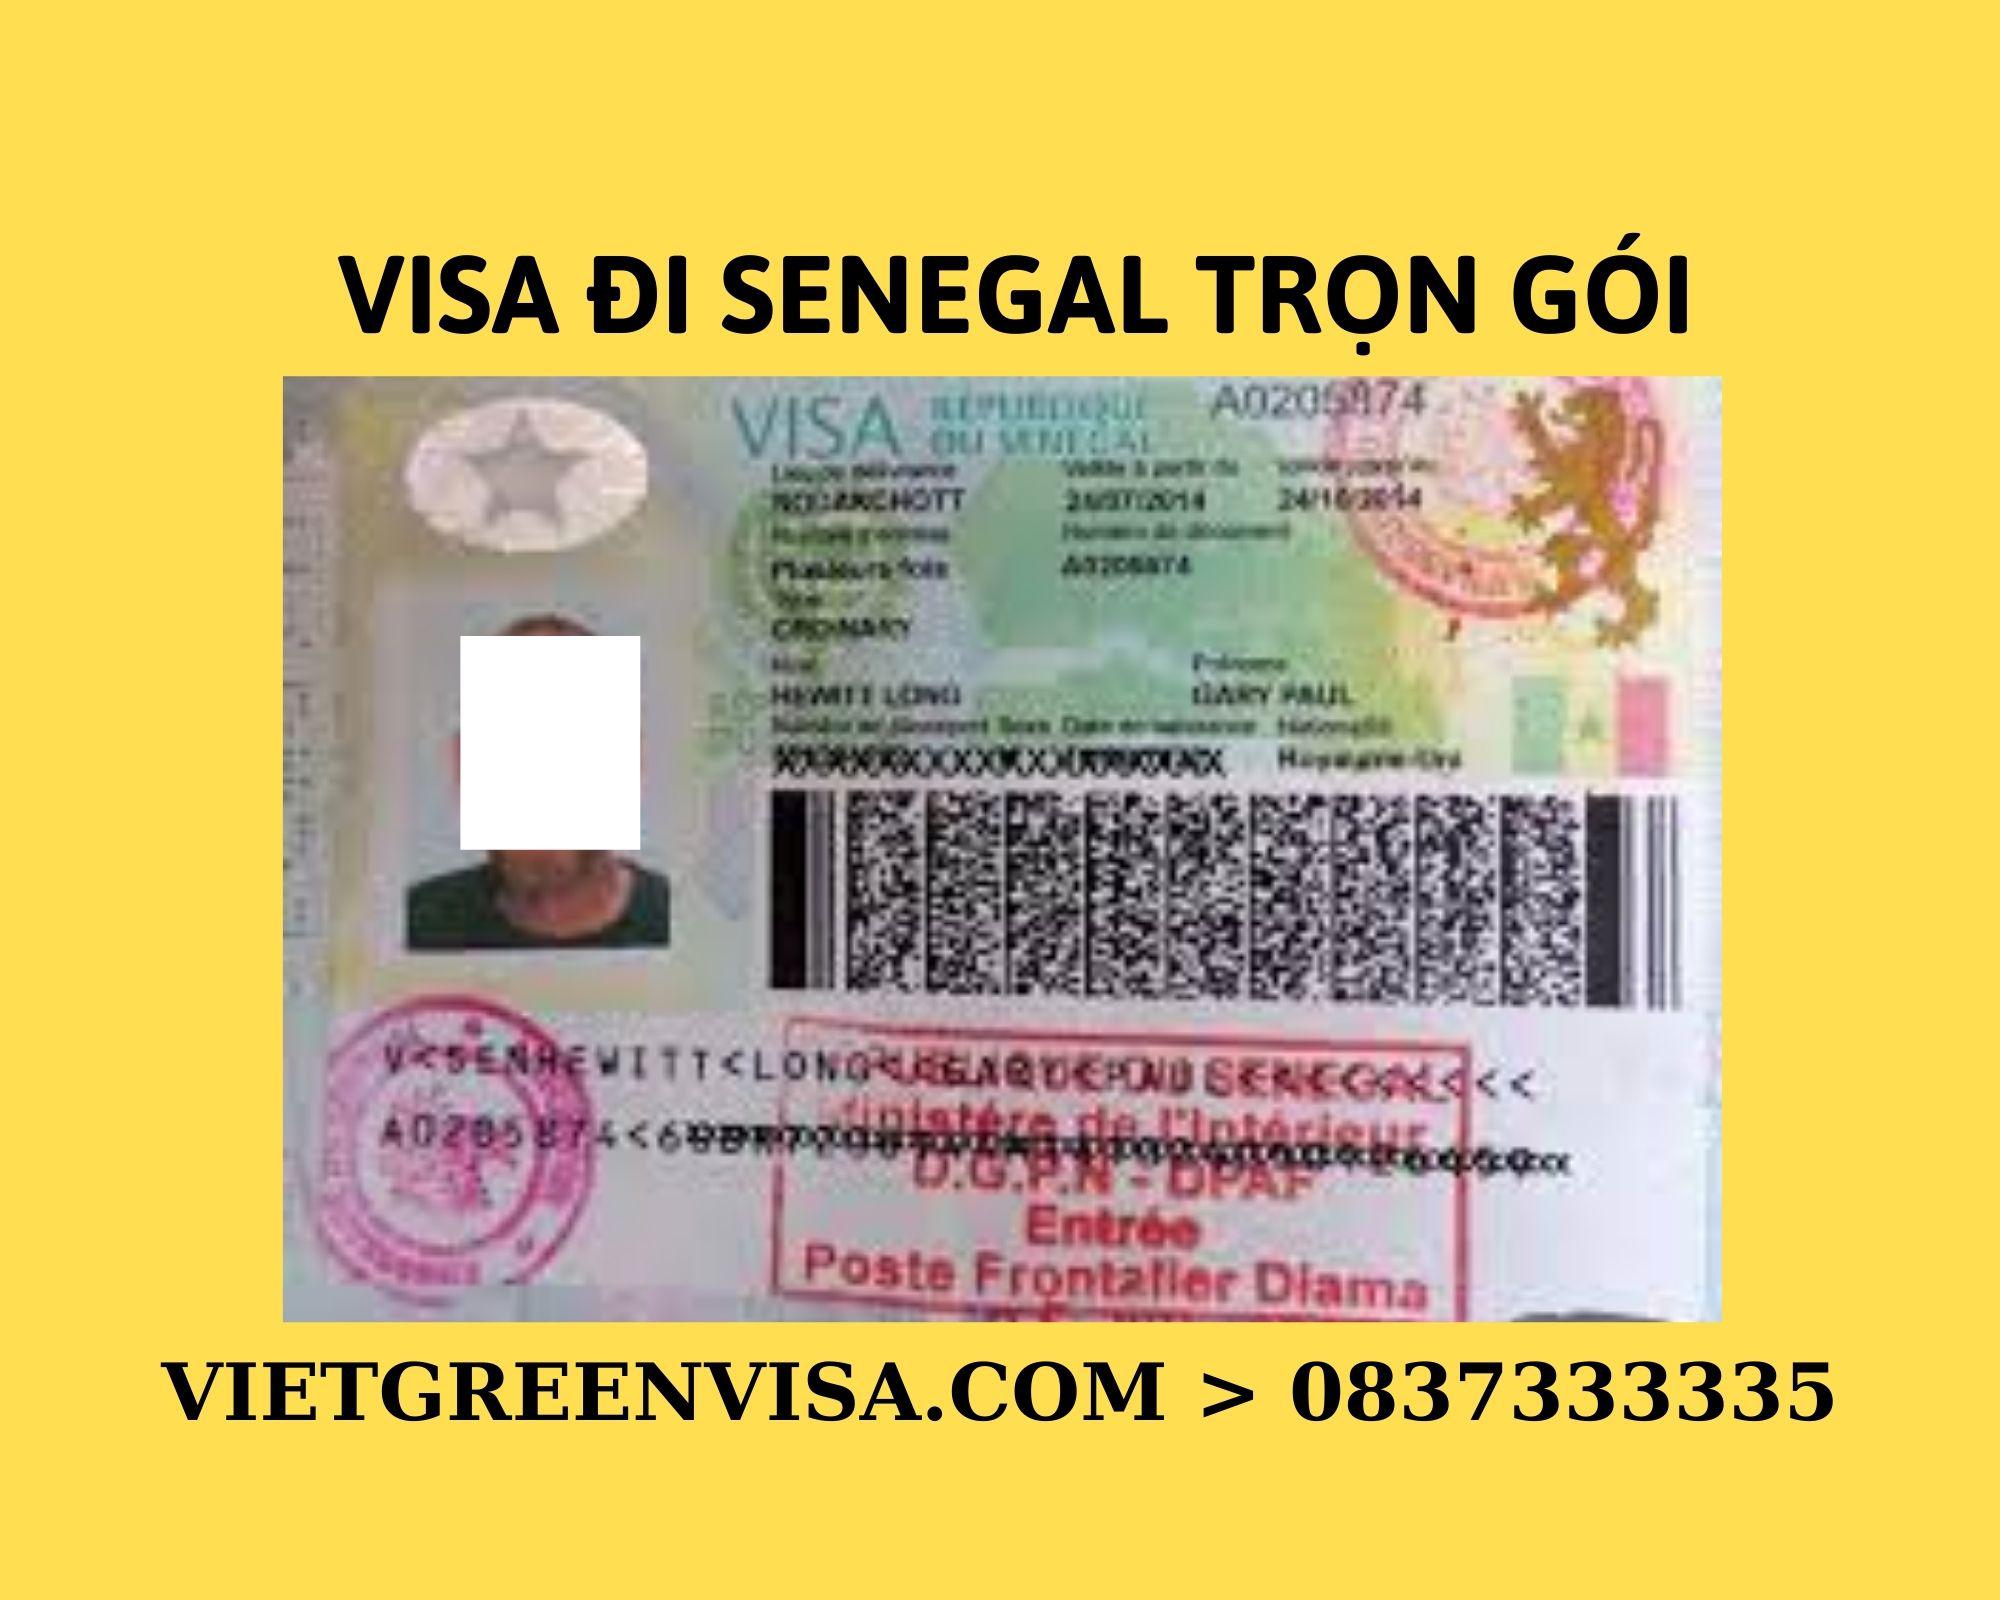 Xin Visa Senegal trọn gói tại Hà Nội, Hồ Chí Minh